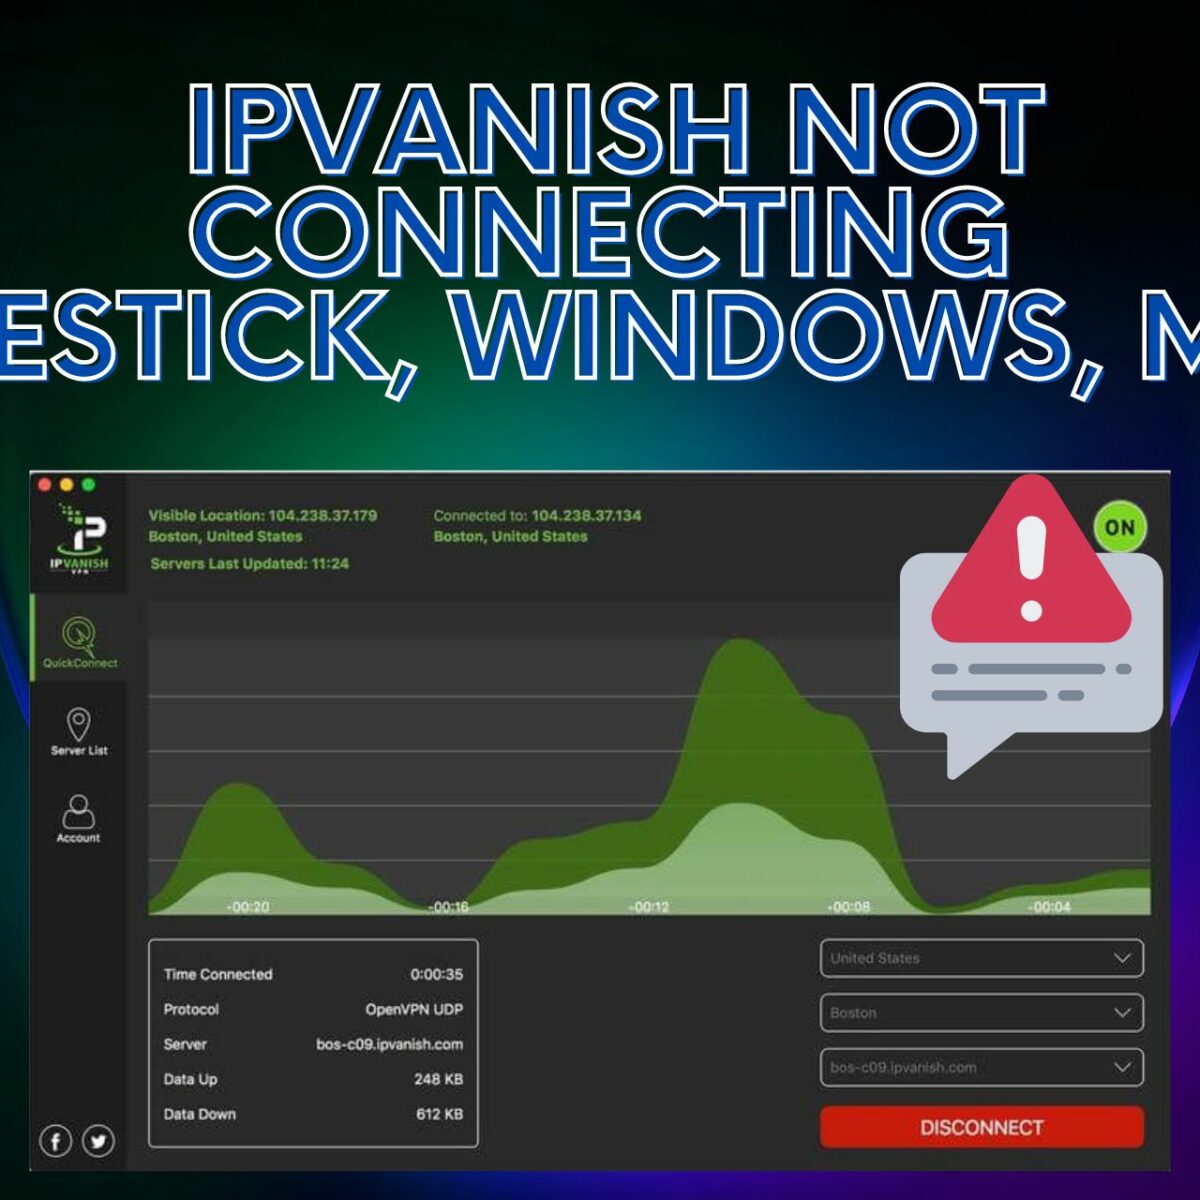 ¿Cómo soluciono que Ipvanish no se conecta?